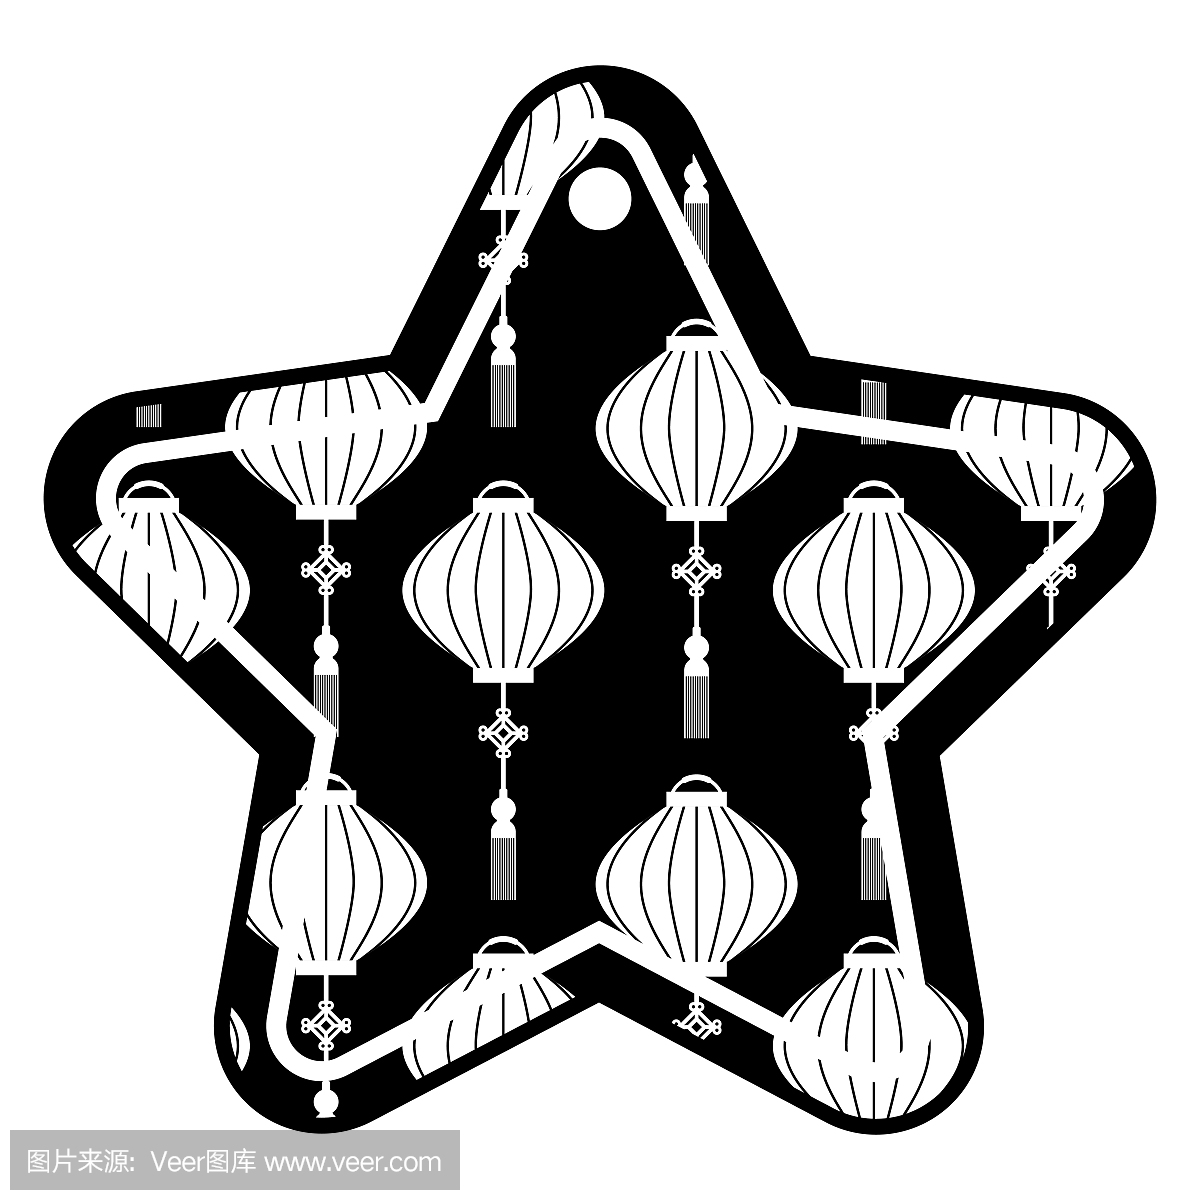 星标记日本灯笼装饰图案